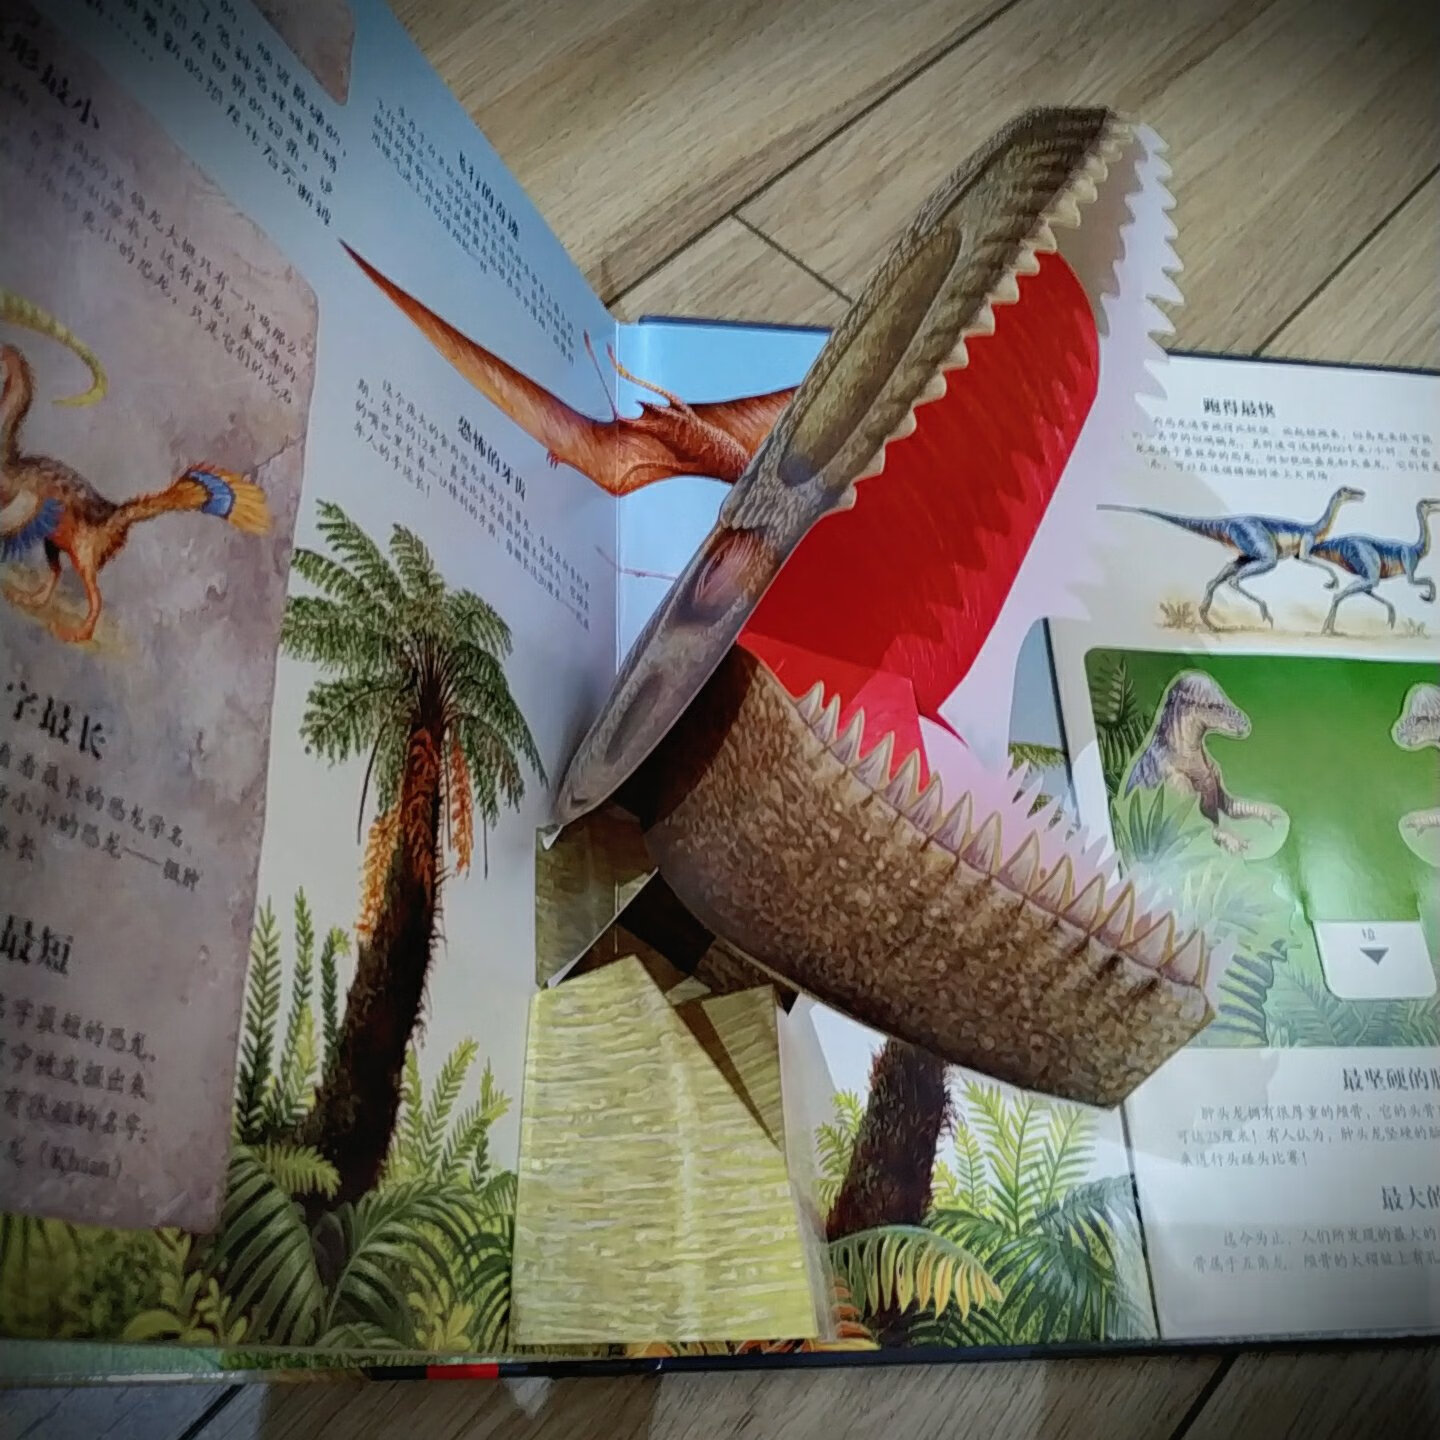 女儿是个小小恐龙迷，之前买的恐龙大陆系列已经翻烂了。这次做活动给她的书架更新一批书。